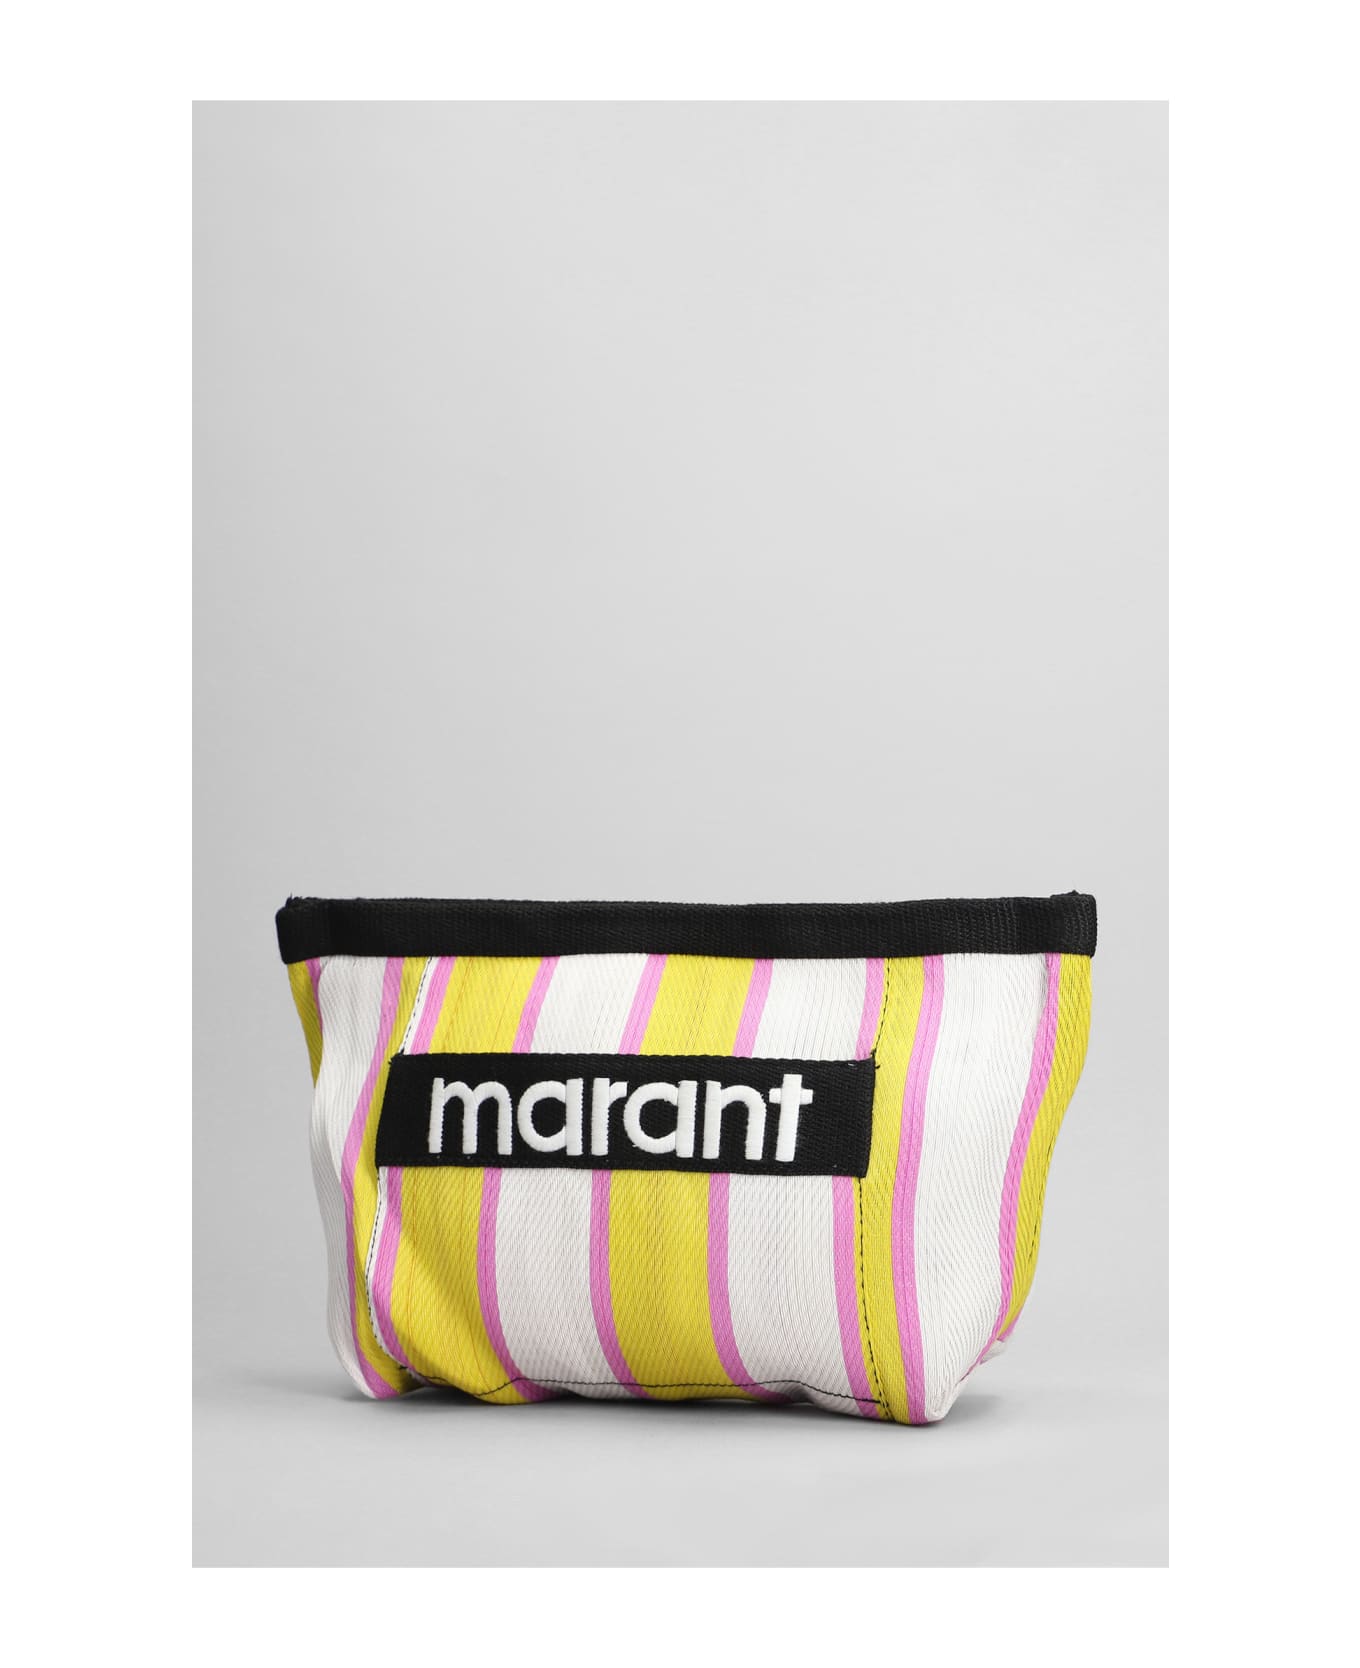 Isabel Marant Powden Clutch In Multicolor Nylon - multicolor